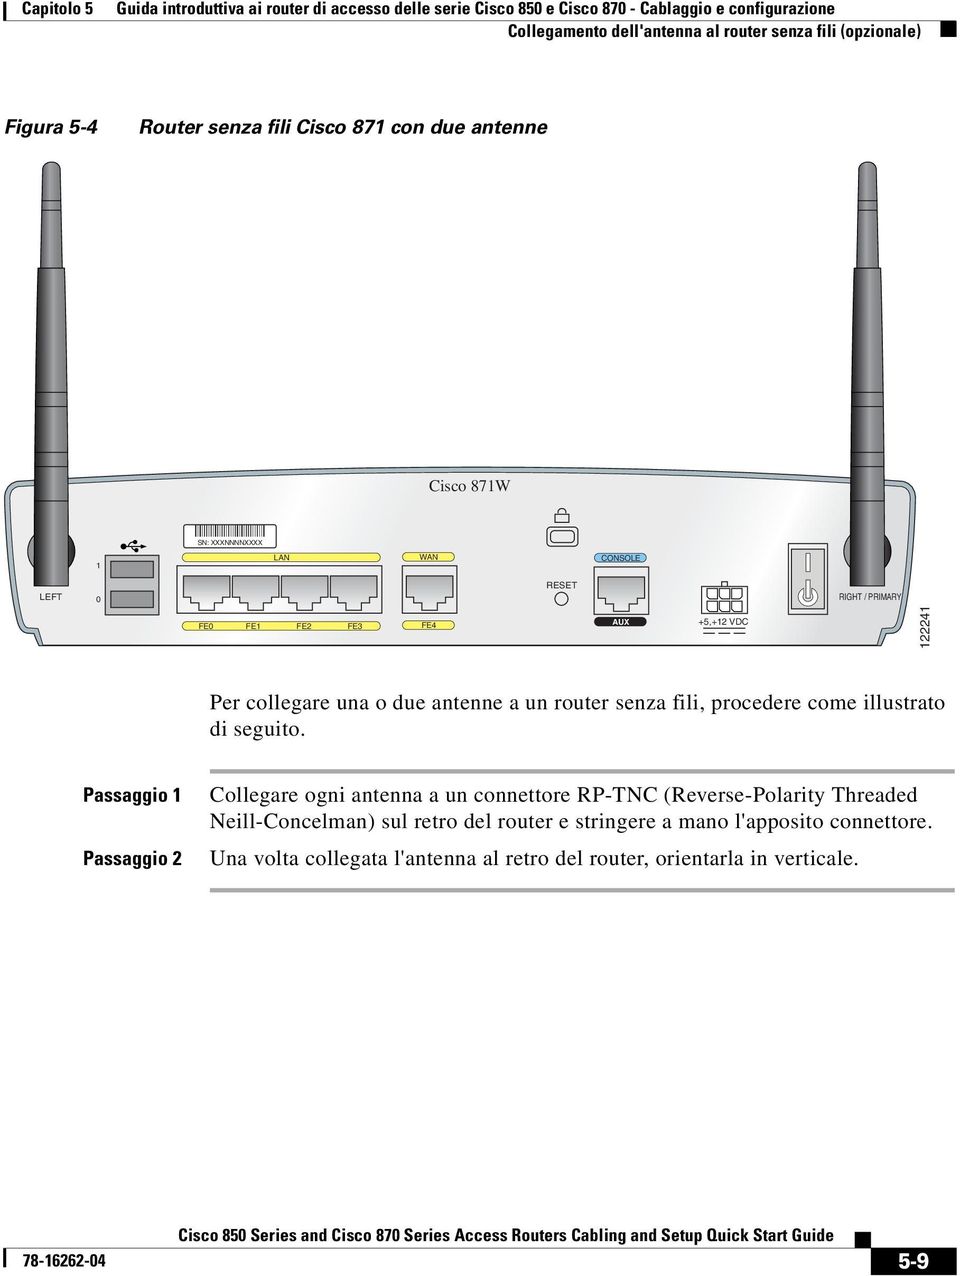 Per collegare una o due antenne a un router senza fili, procedere come illustrato di seguito.